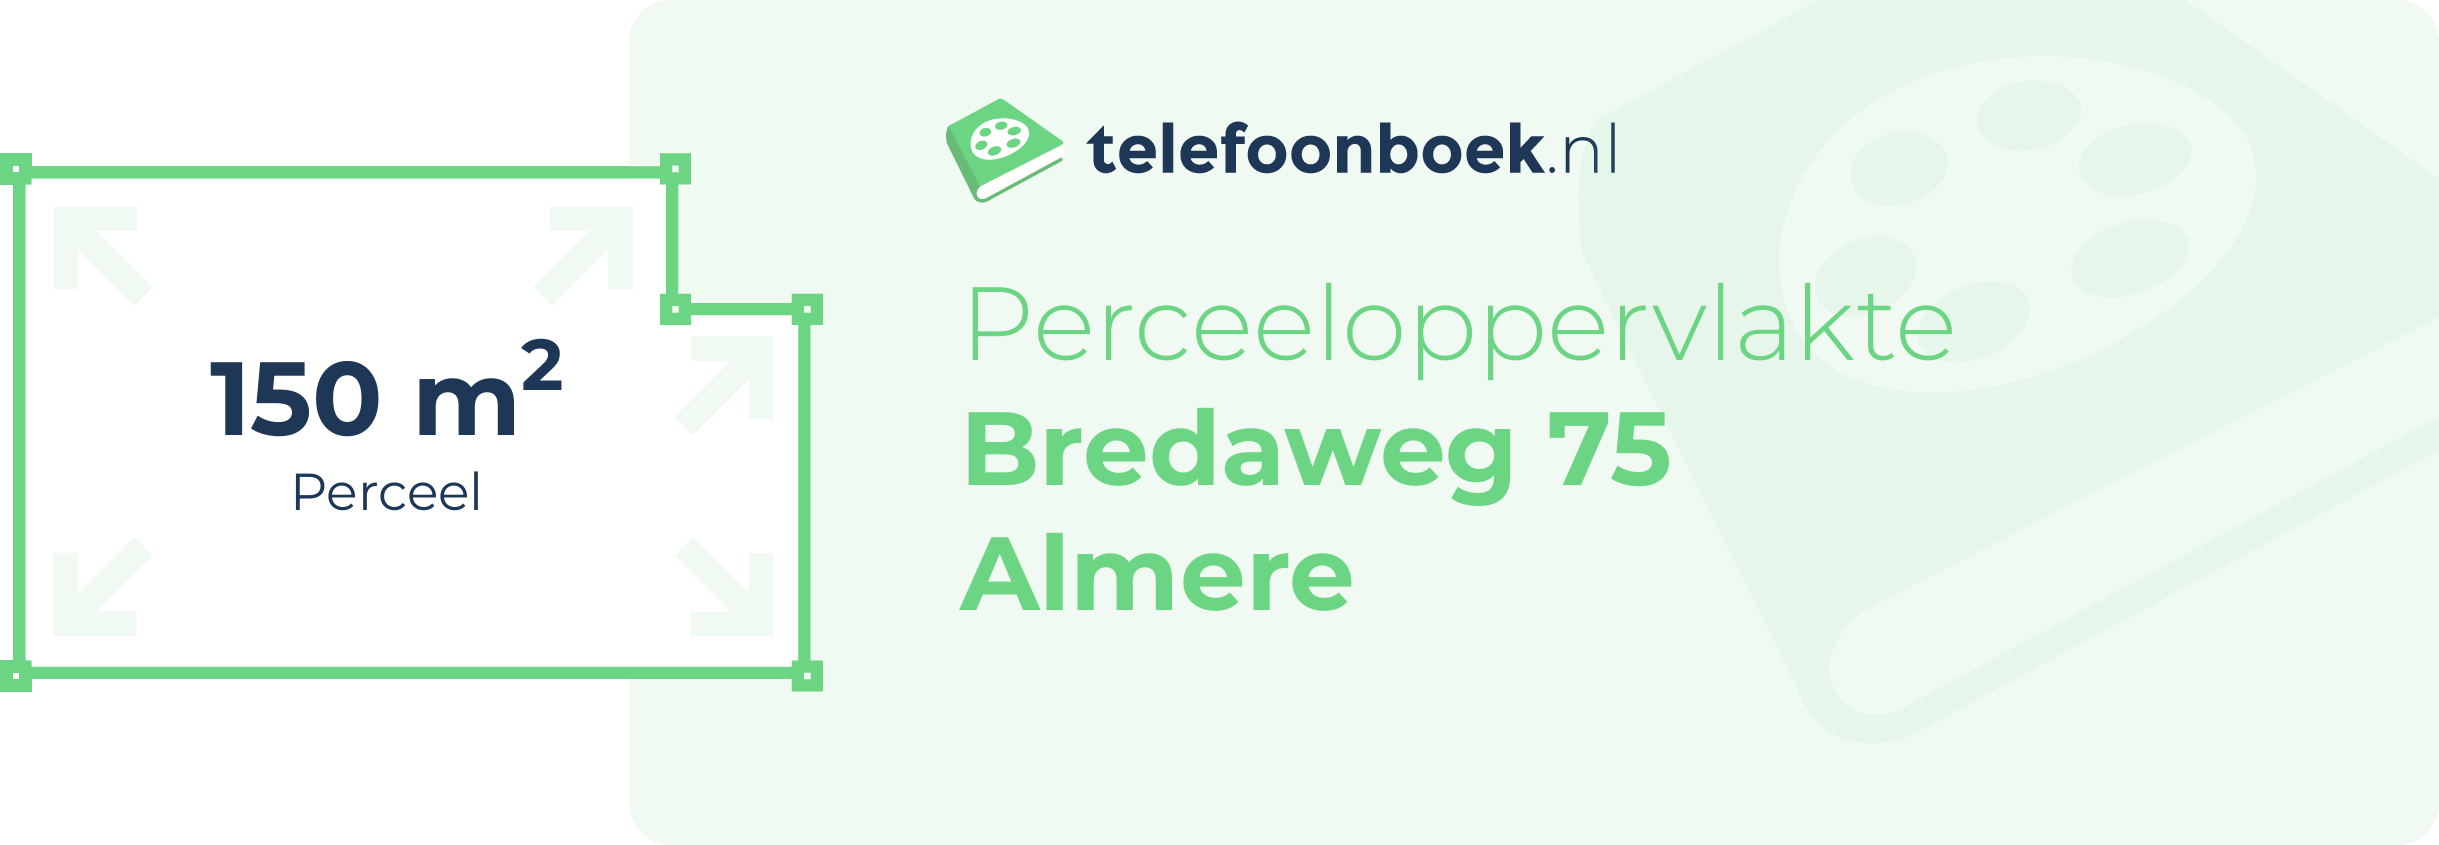 Perceeloppervlakte Bredaweg 75 Almere